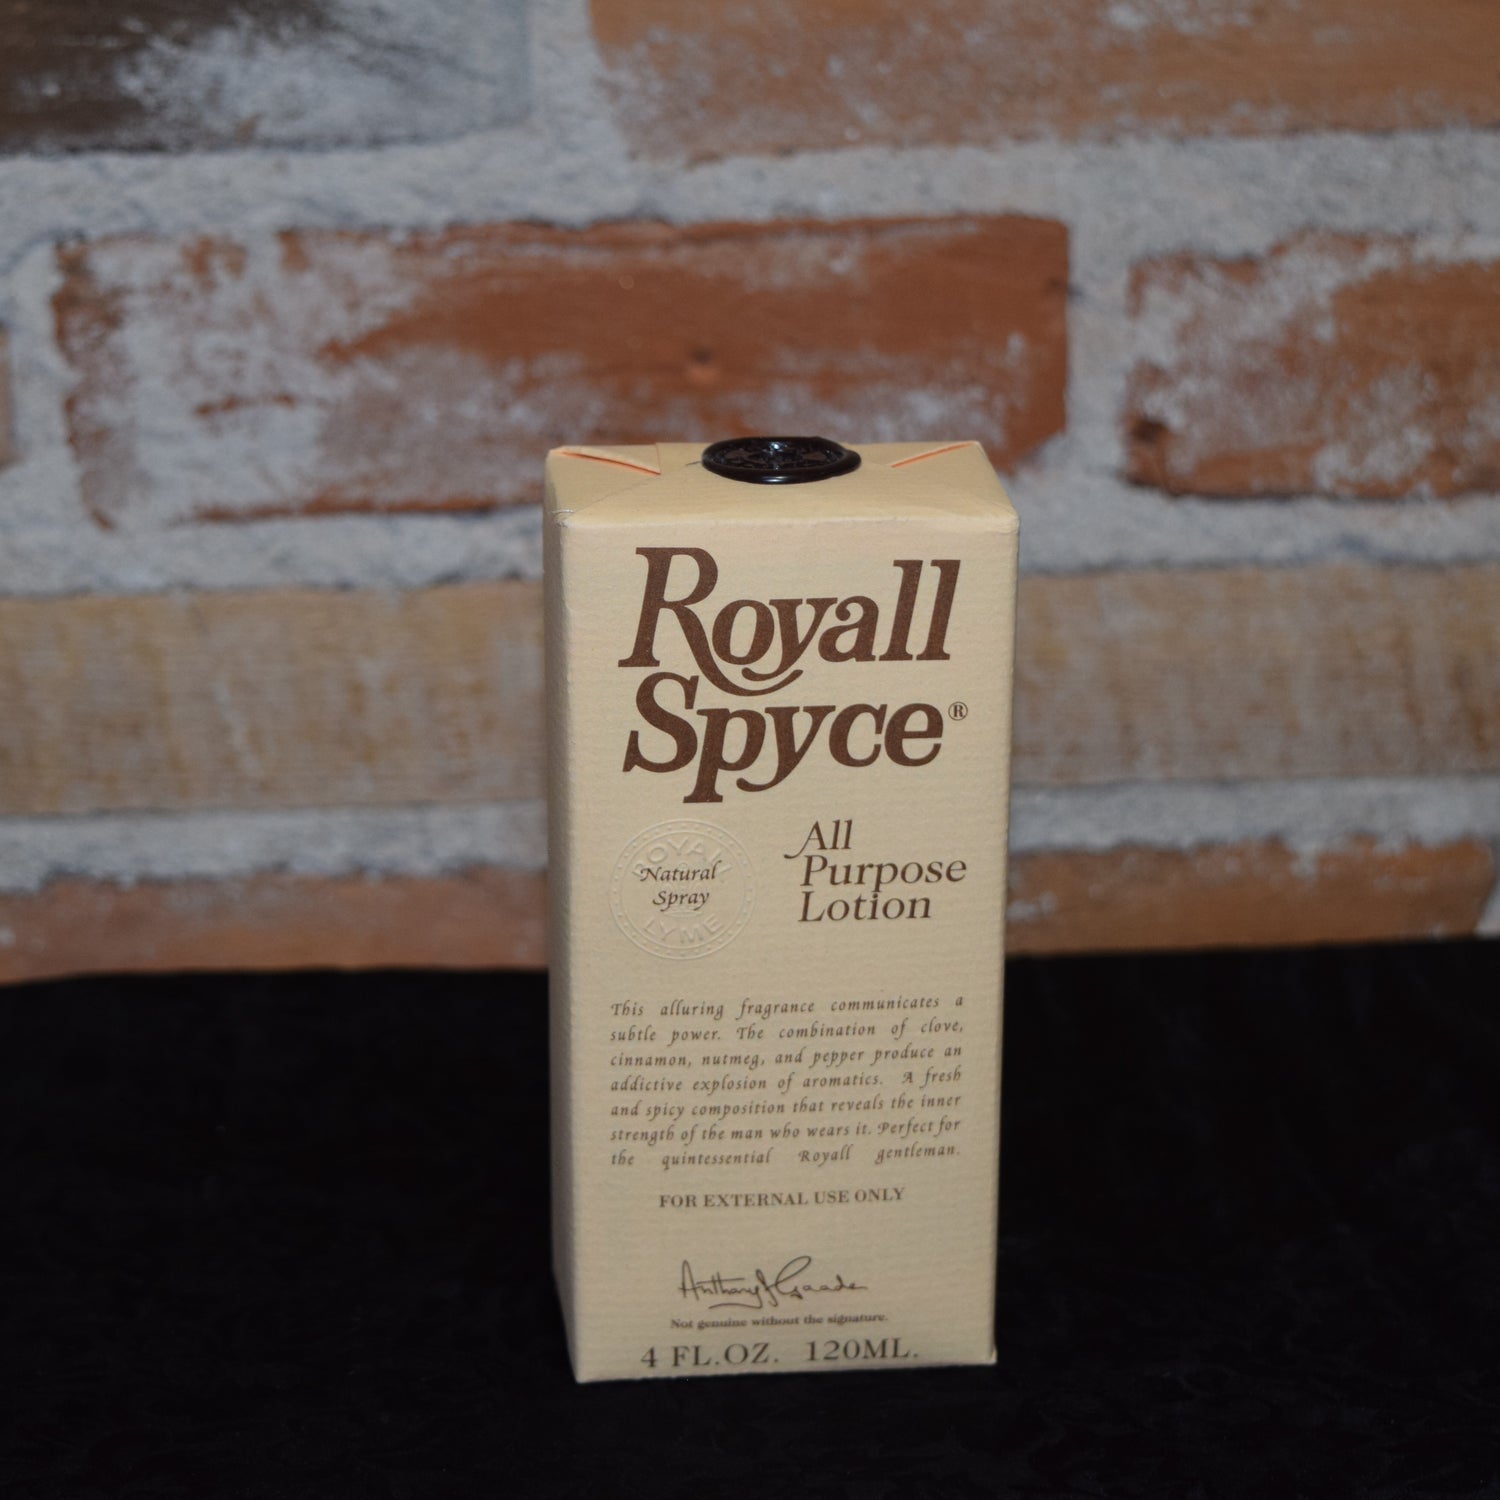 Royall Spyce 4 oz. Natural Spray Cologne